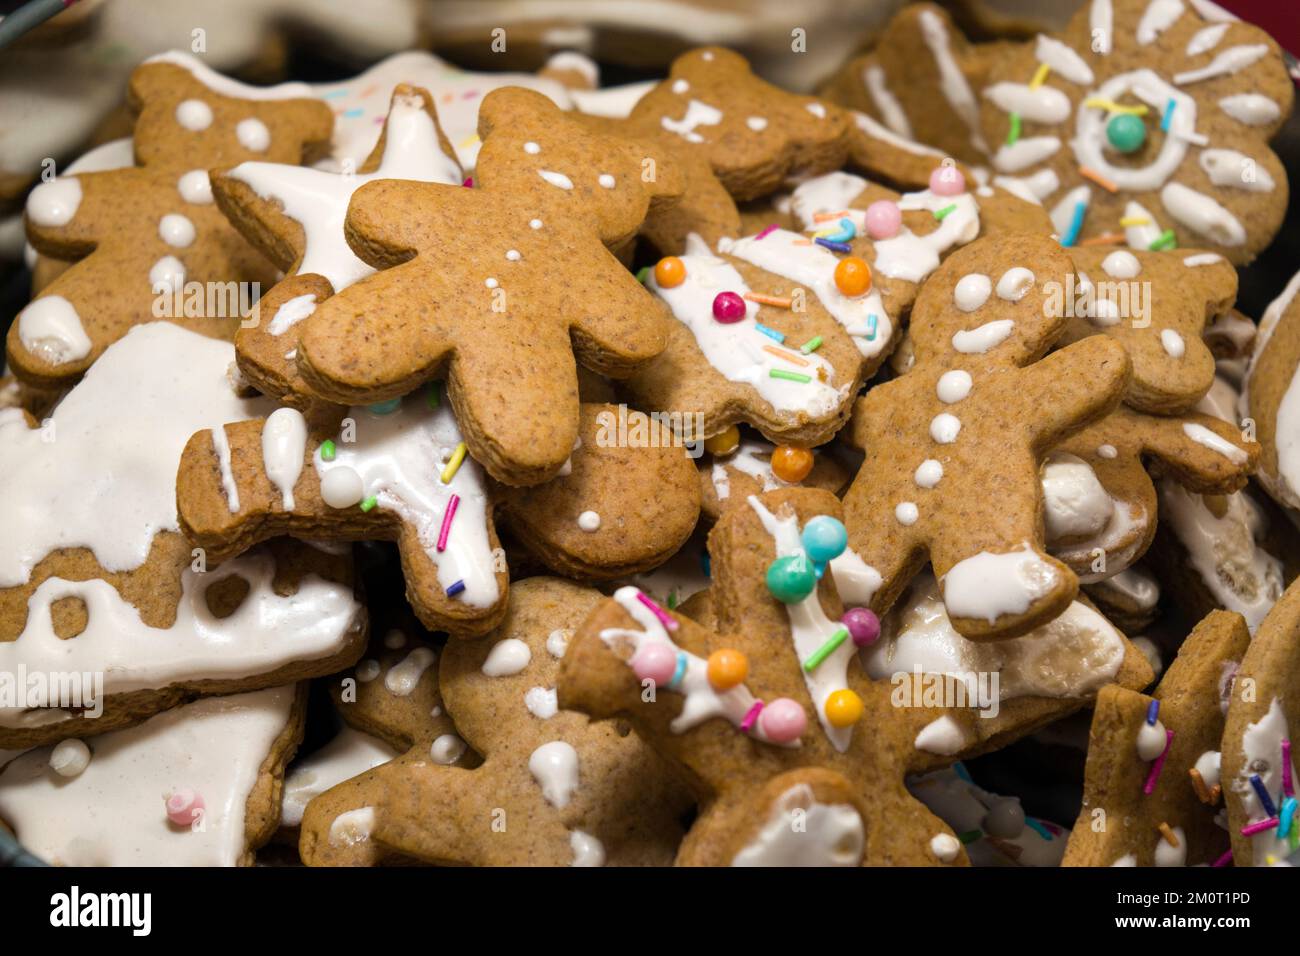 Süßes Lebkuchen hausgemachte Figuren zu Weihnachten, dekoriert mit weißem Glasur und farbigen Süßigkeiten: teddybären, Lebkuchen-Mann, Weihnachtsbaum, Sterne. Stockfoto